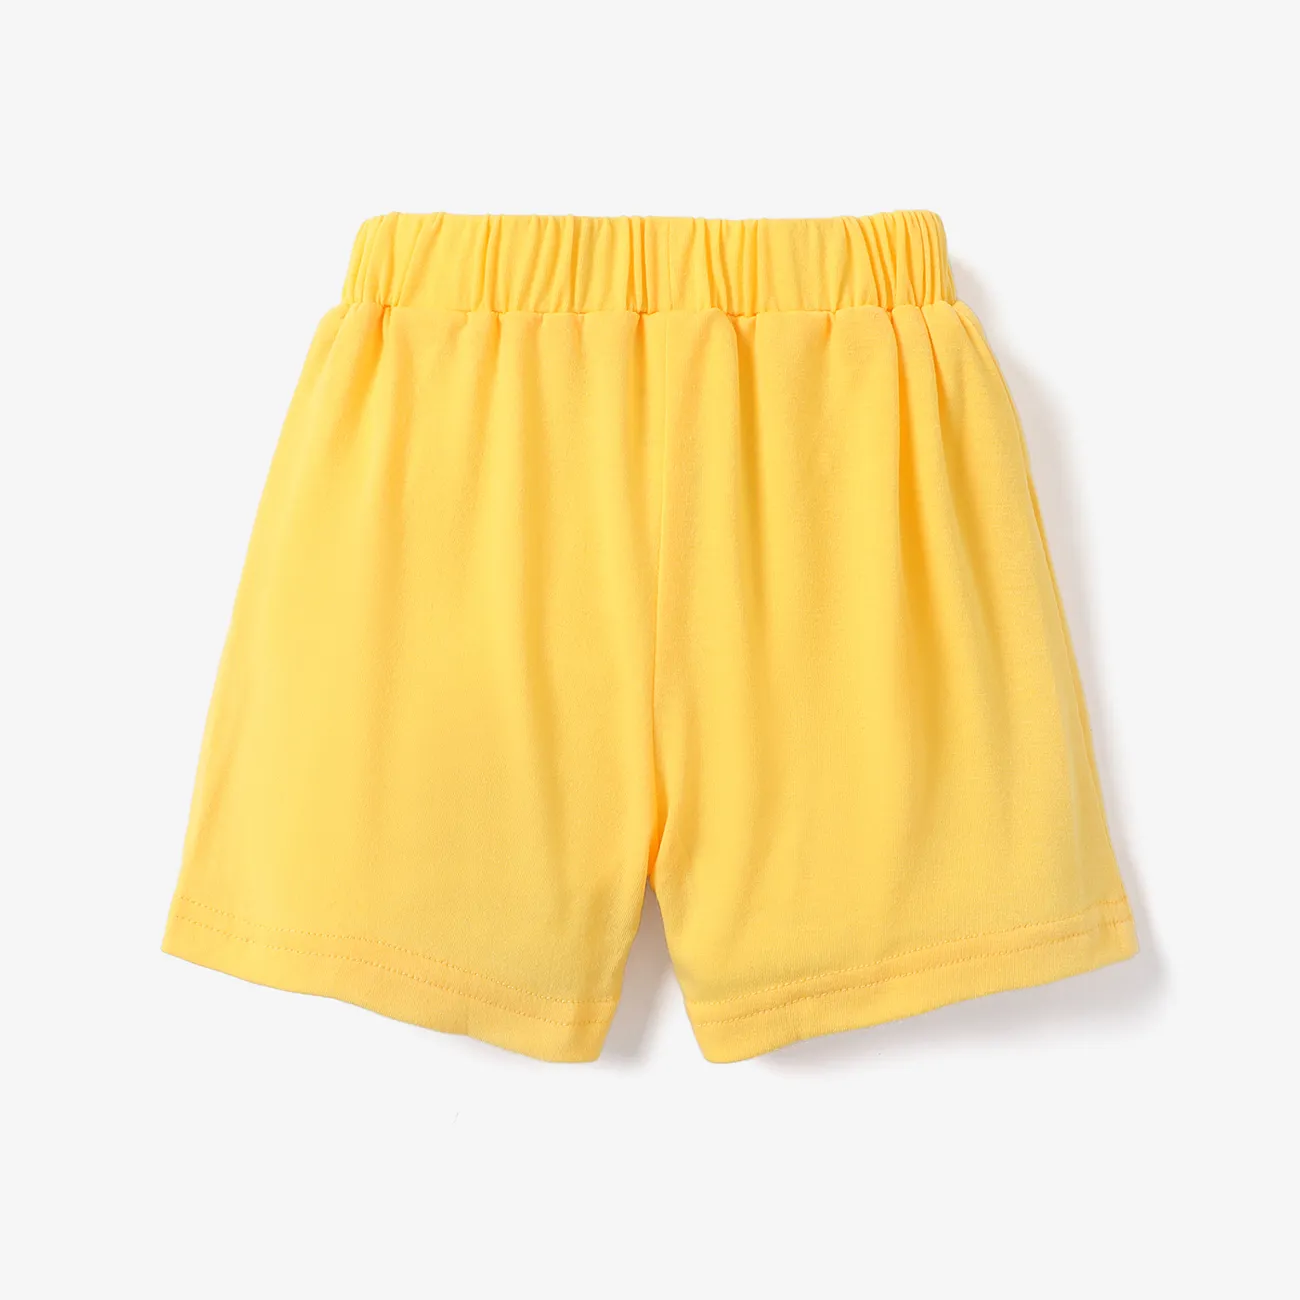 Niño pequeño Unisex Básico Pantalones cortos Amarillo big image 1